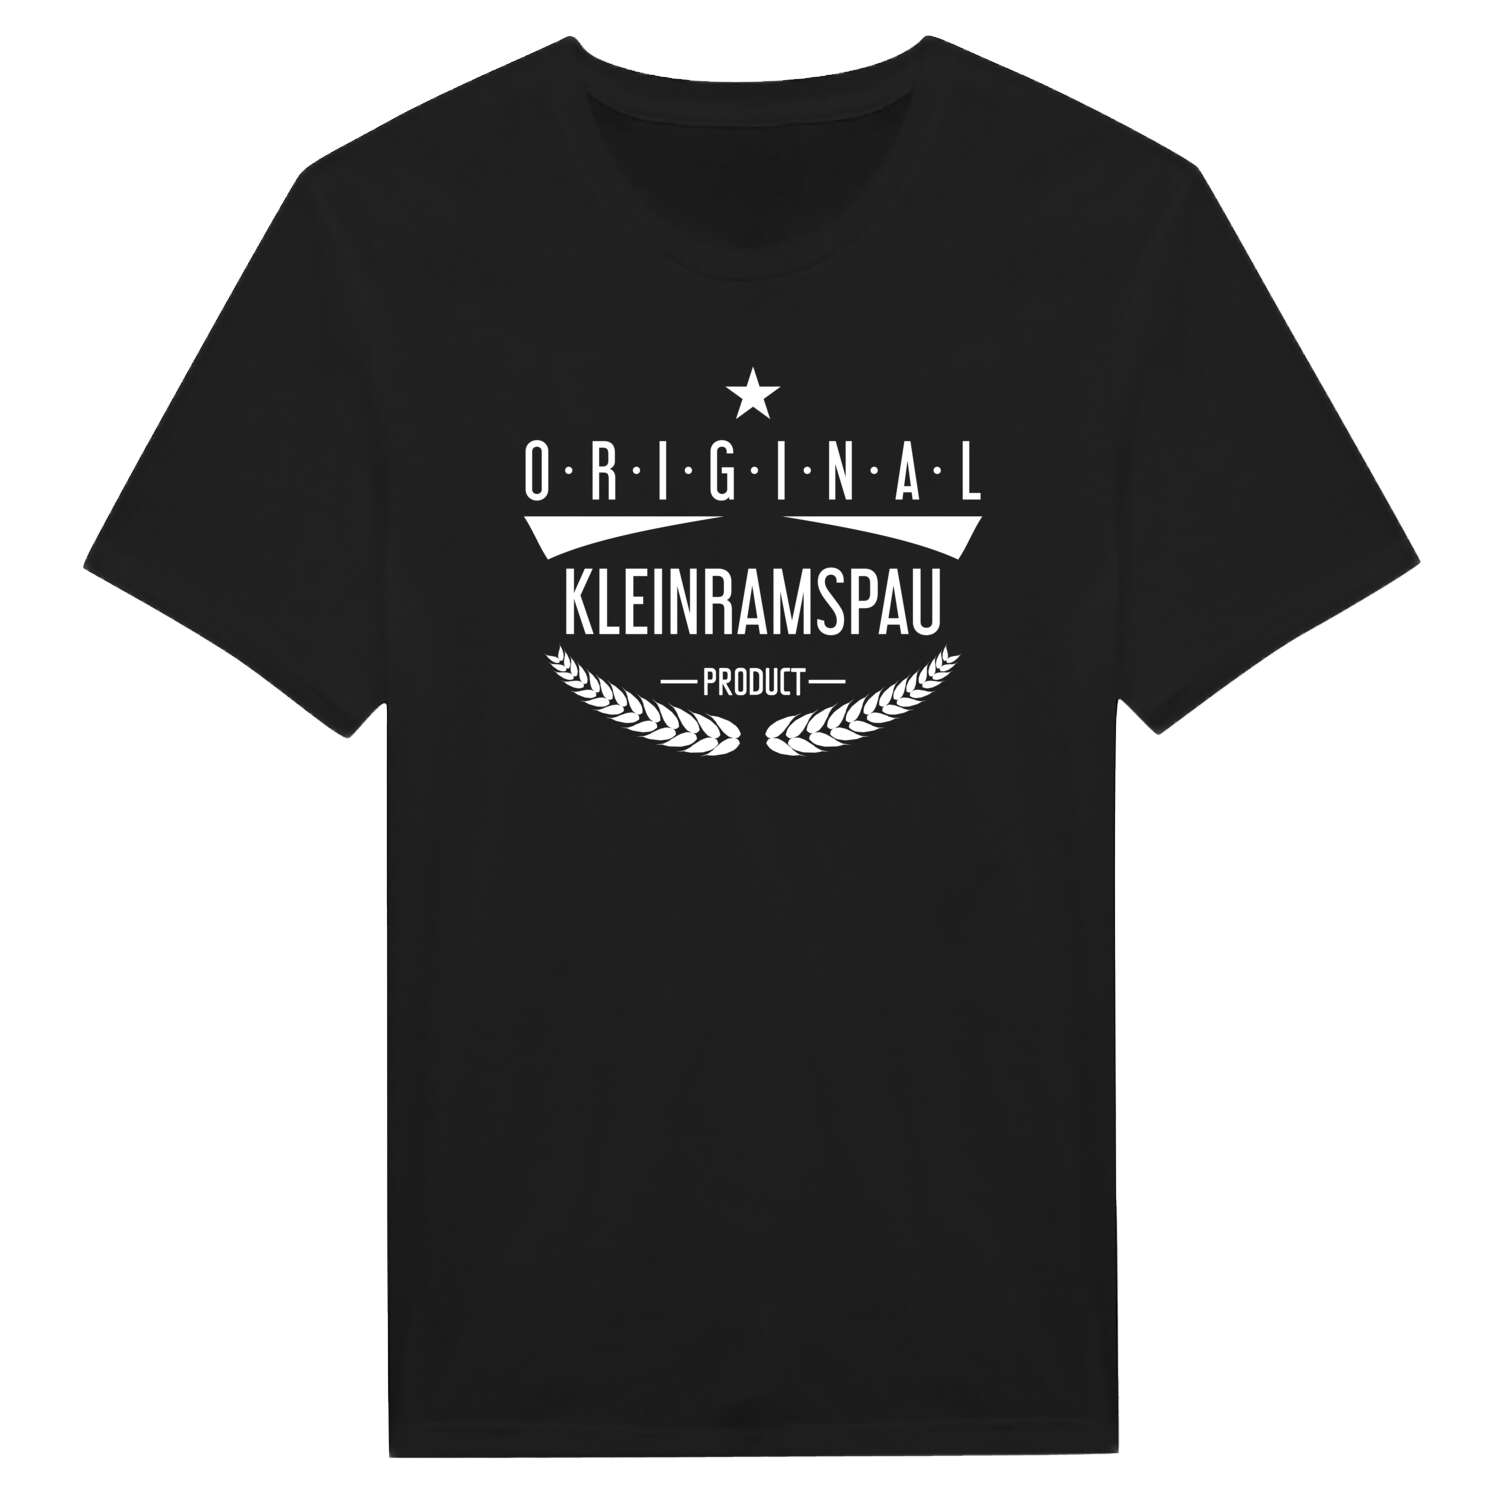 Kleinramspau T-Shirt »Original Product«